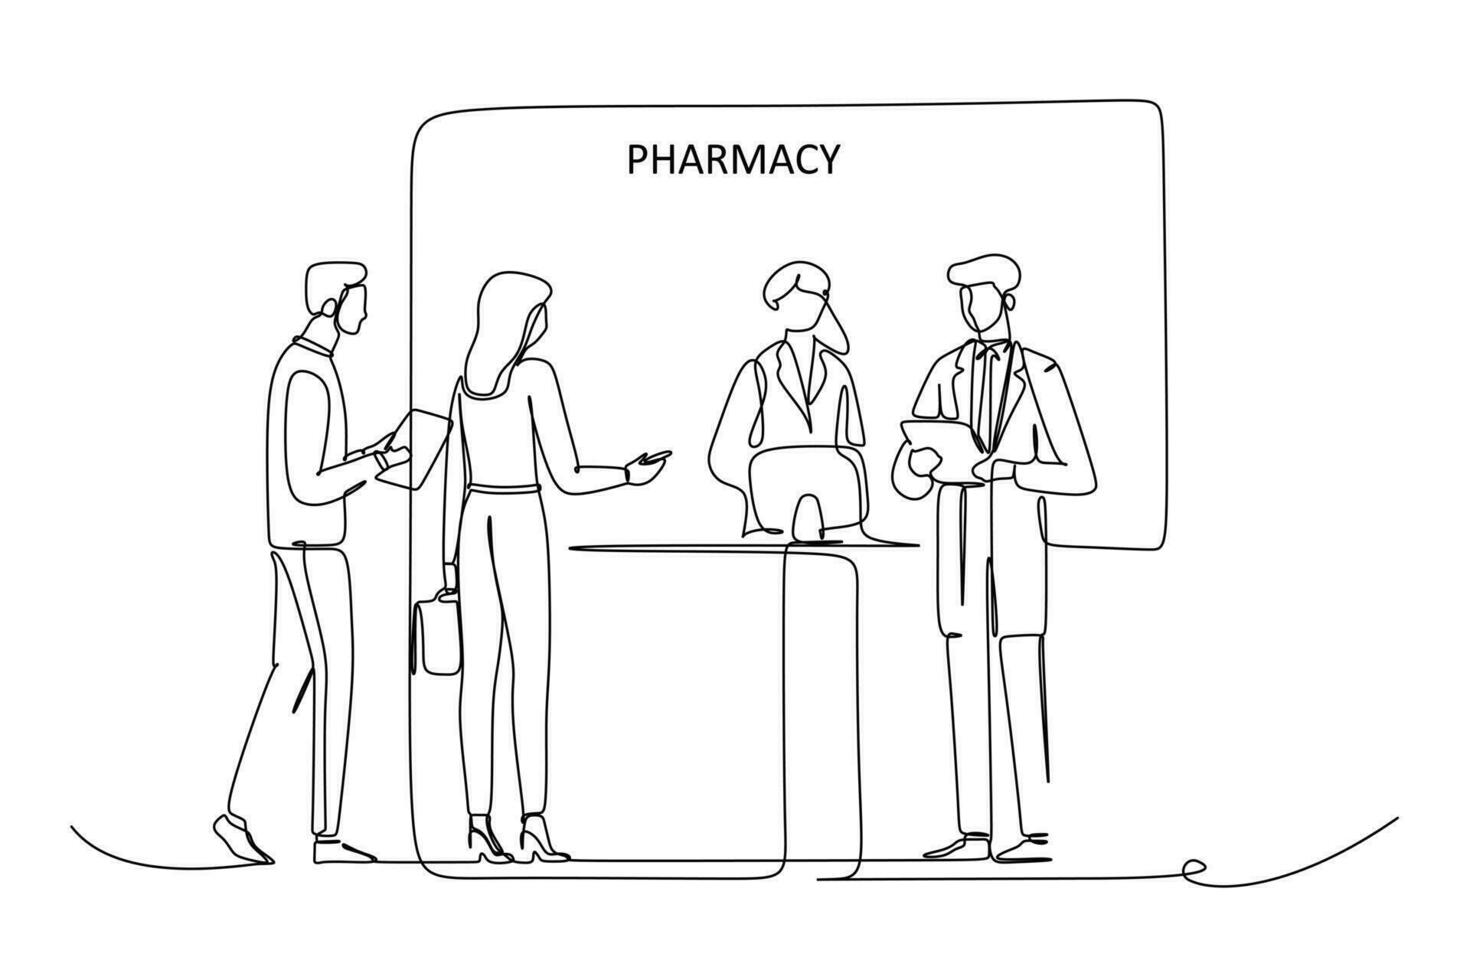 farmacisti preparazione farmaci nel loro I negozi, interagendo con clienti, vettore illustrazione